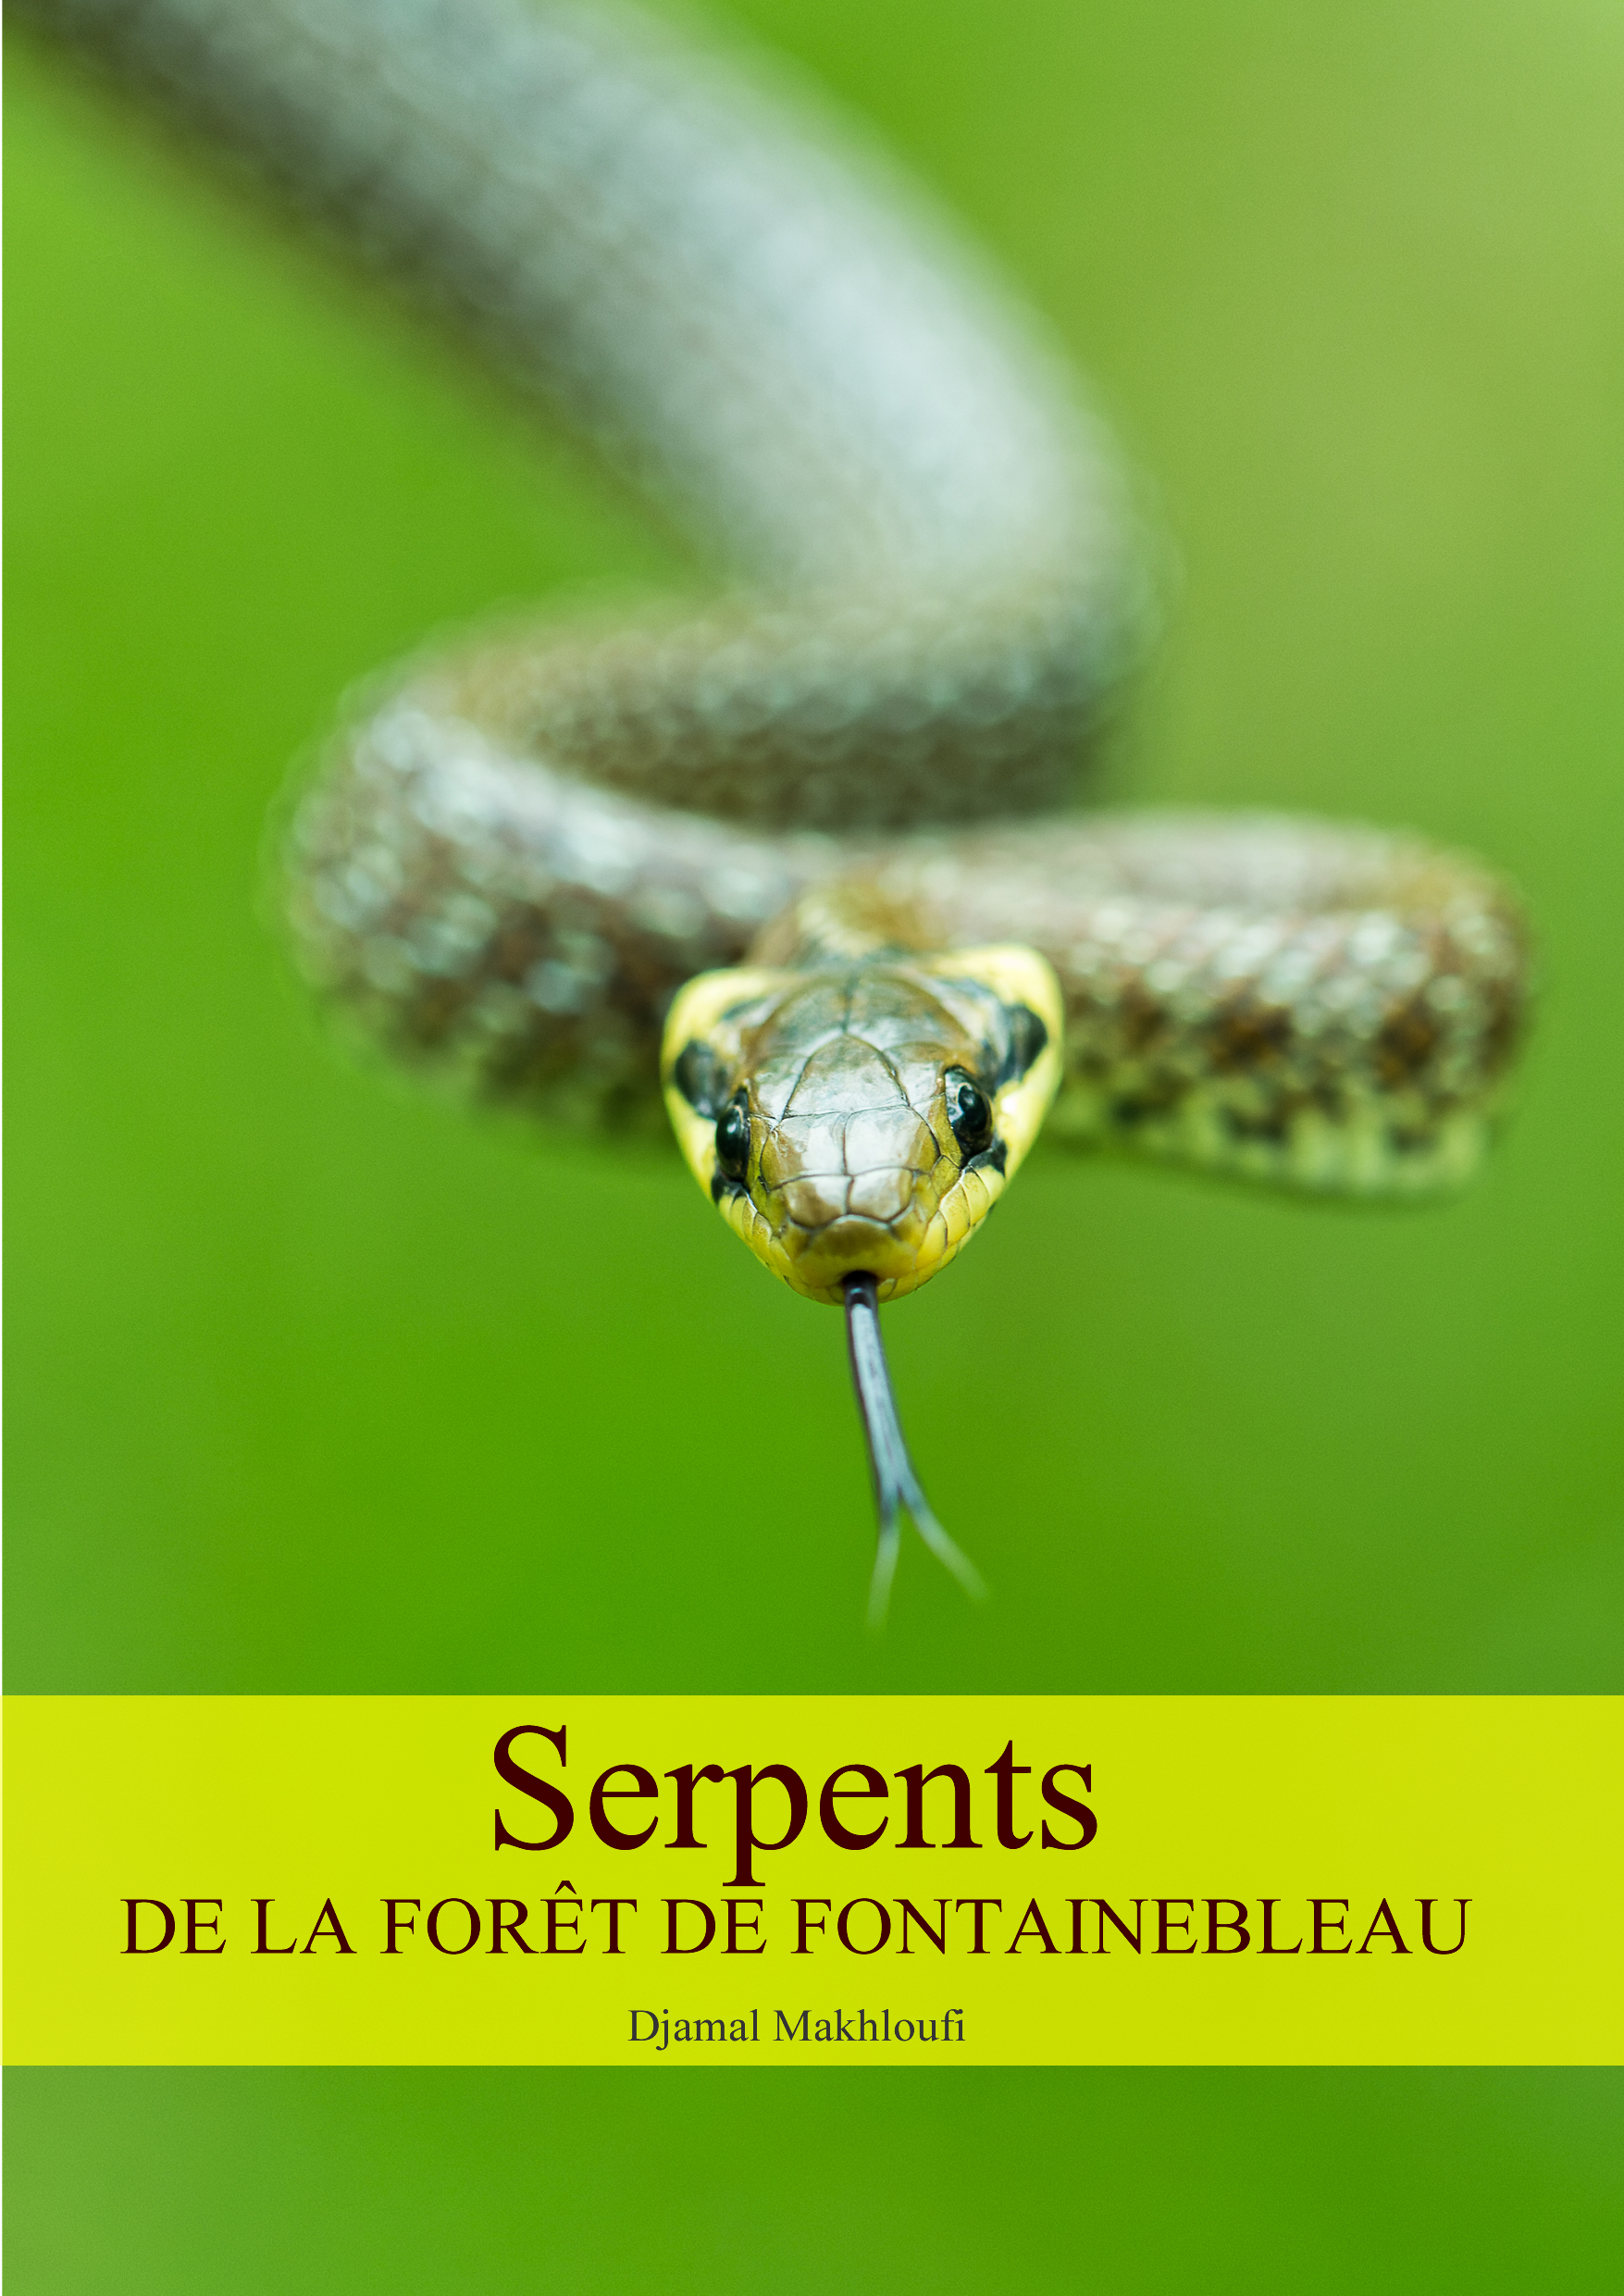 Serpents de la forêt de Fontainebleau